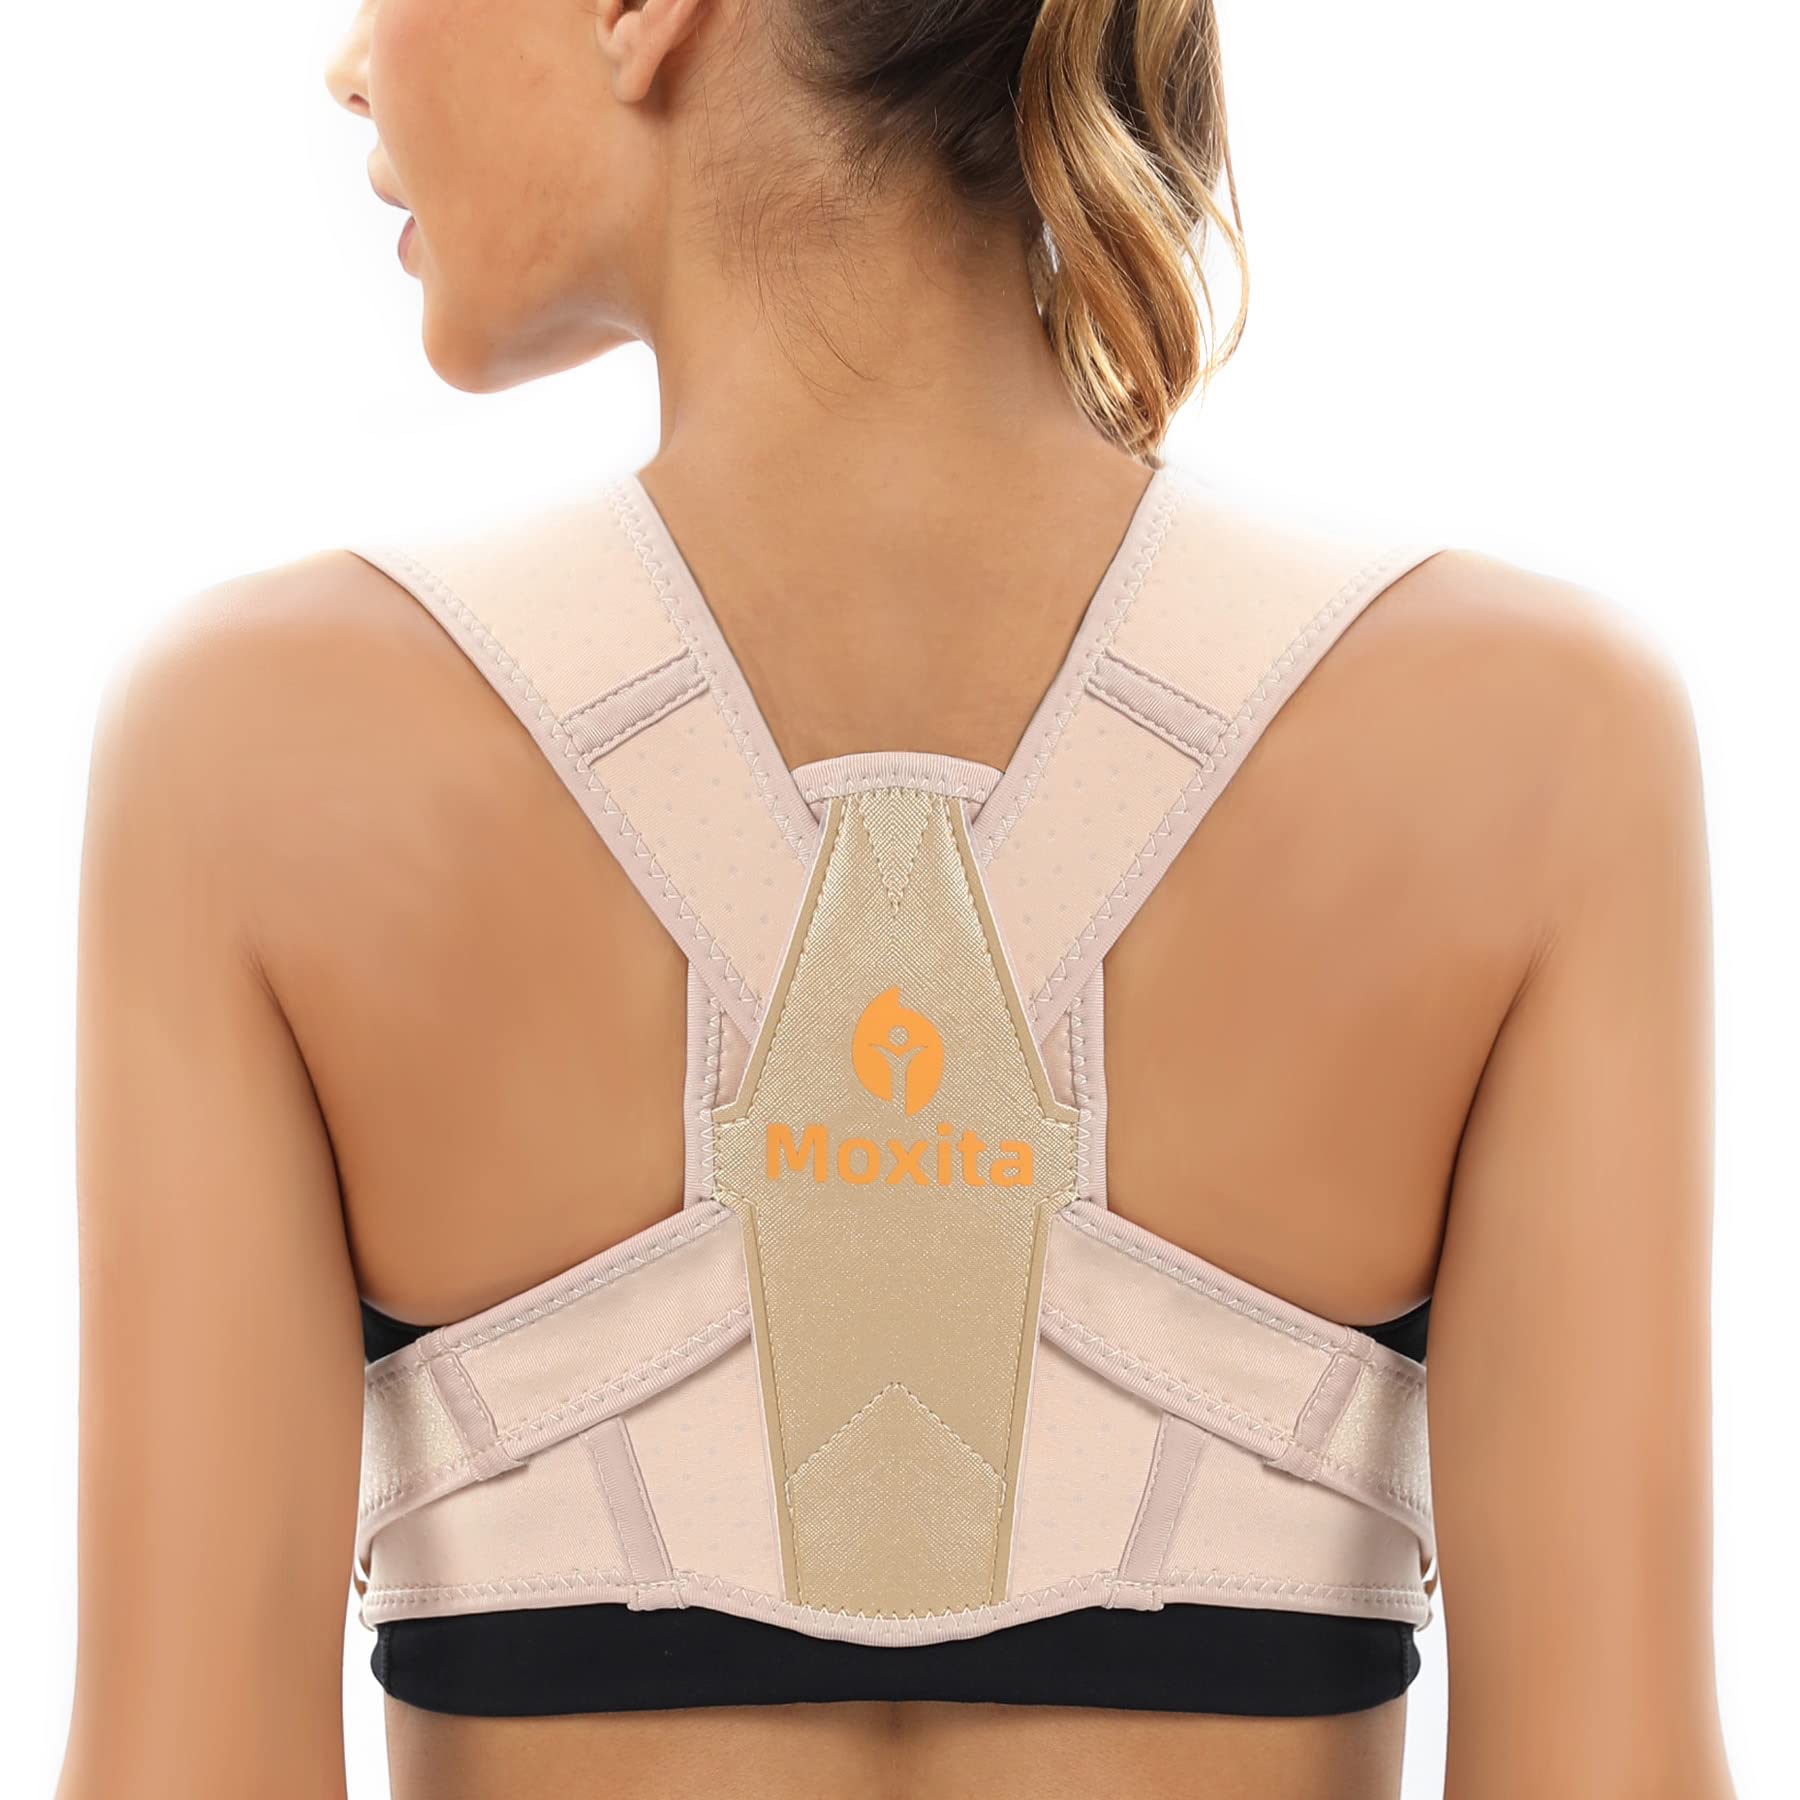 Posture Corrector for Women and Men, Adjustable Upper Back Brace